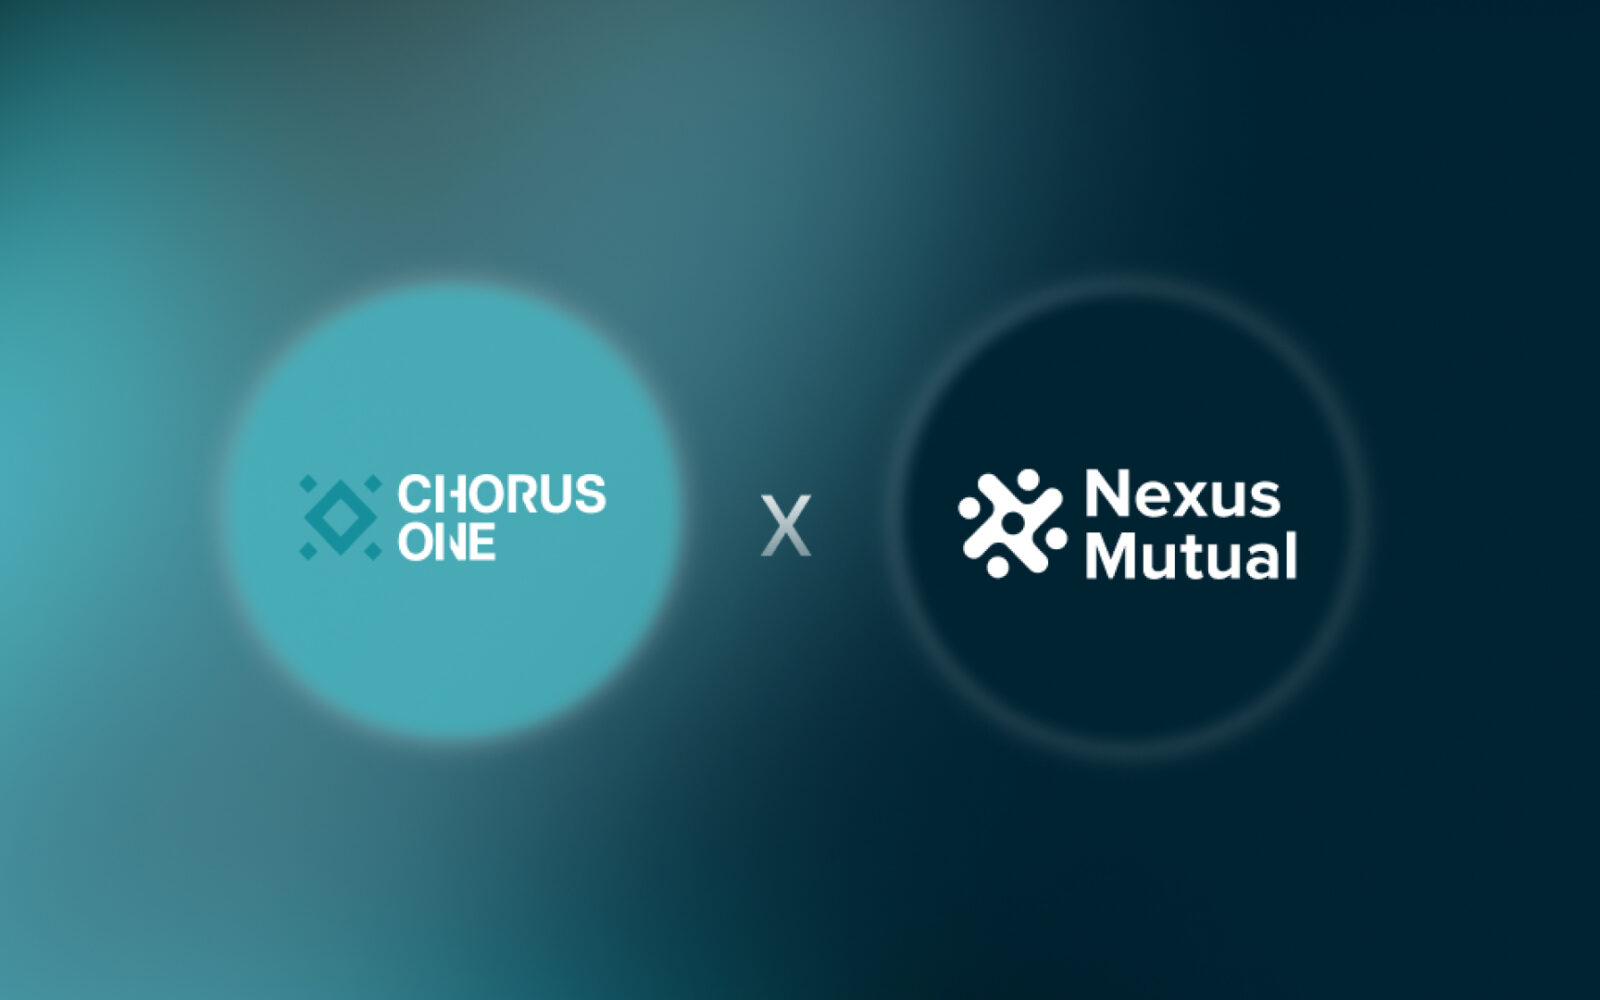 nexus chorus one